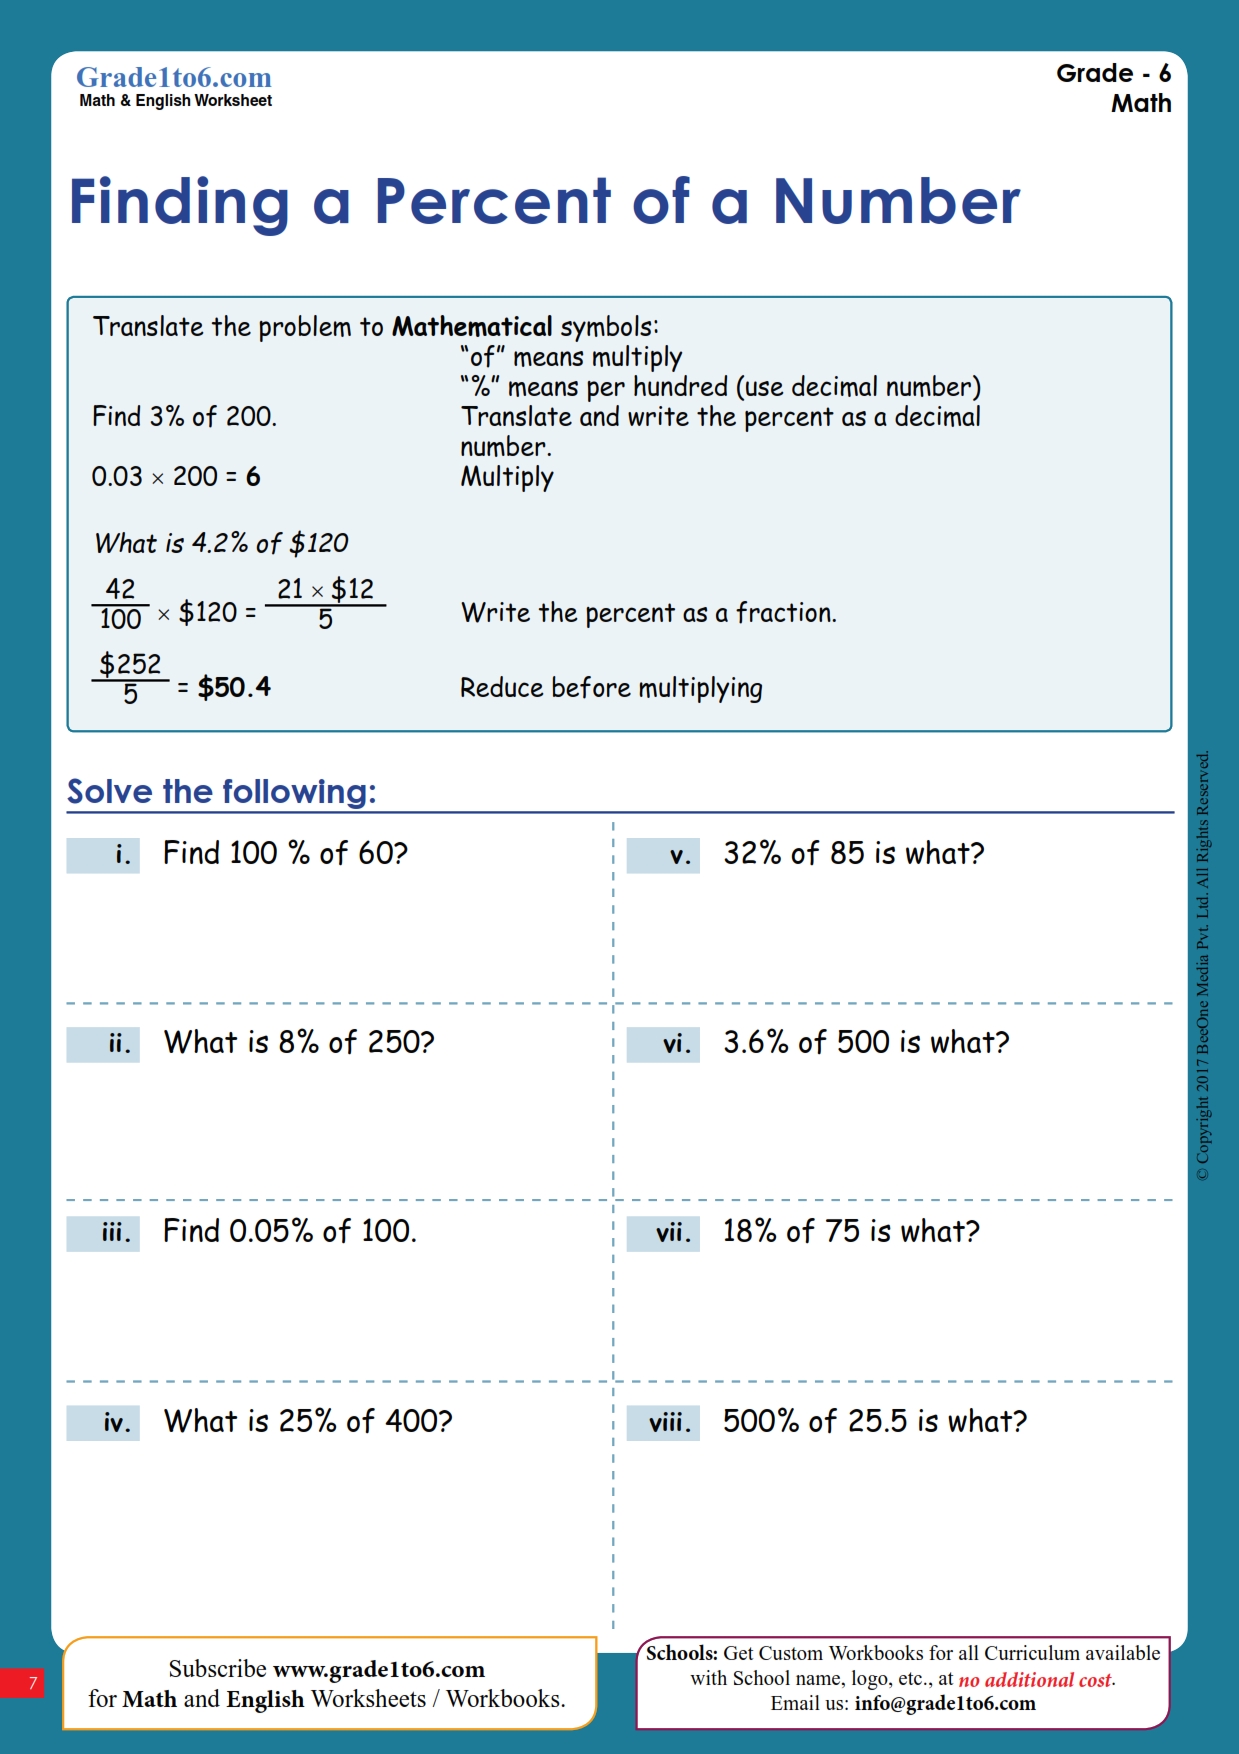 Grade 6 Geometry Worksheets Free Printable K5 Learning Free Printable Percentage Of Number